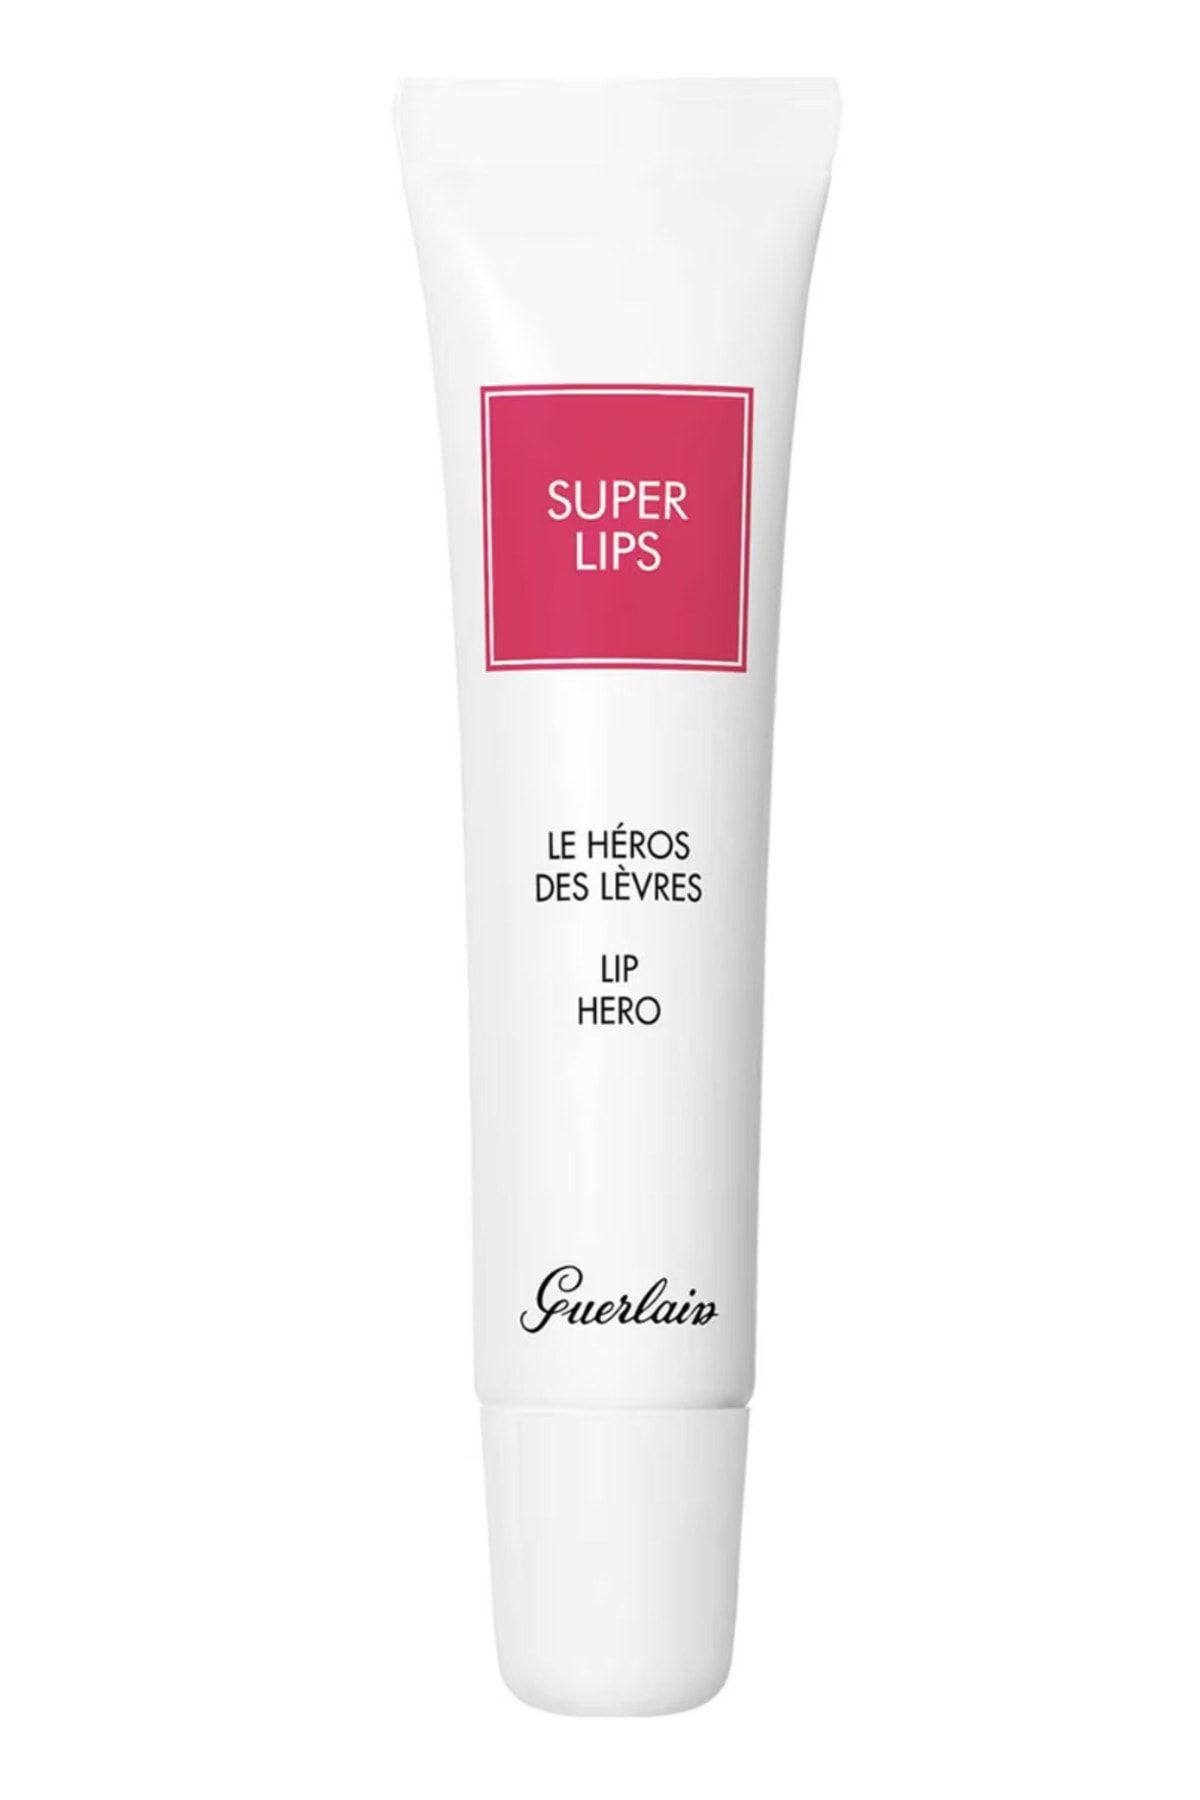 Guerlain Super Lips - Yumuşak, Pürüzsüz, Dolgun Dudaklar İçin Nemlendirici Dudak Bakımı 15 ml